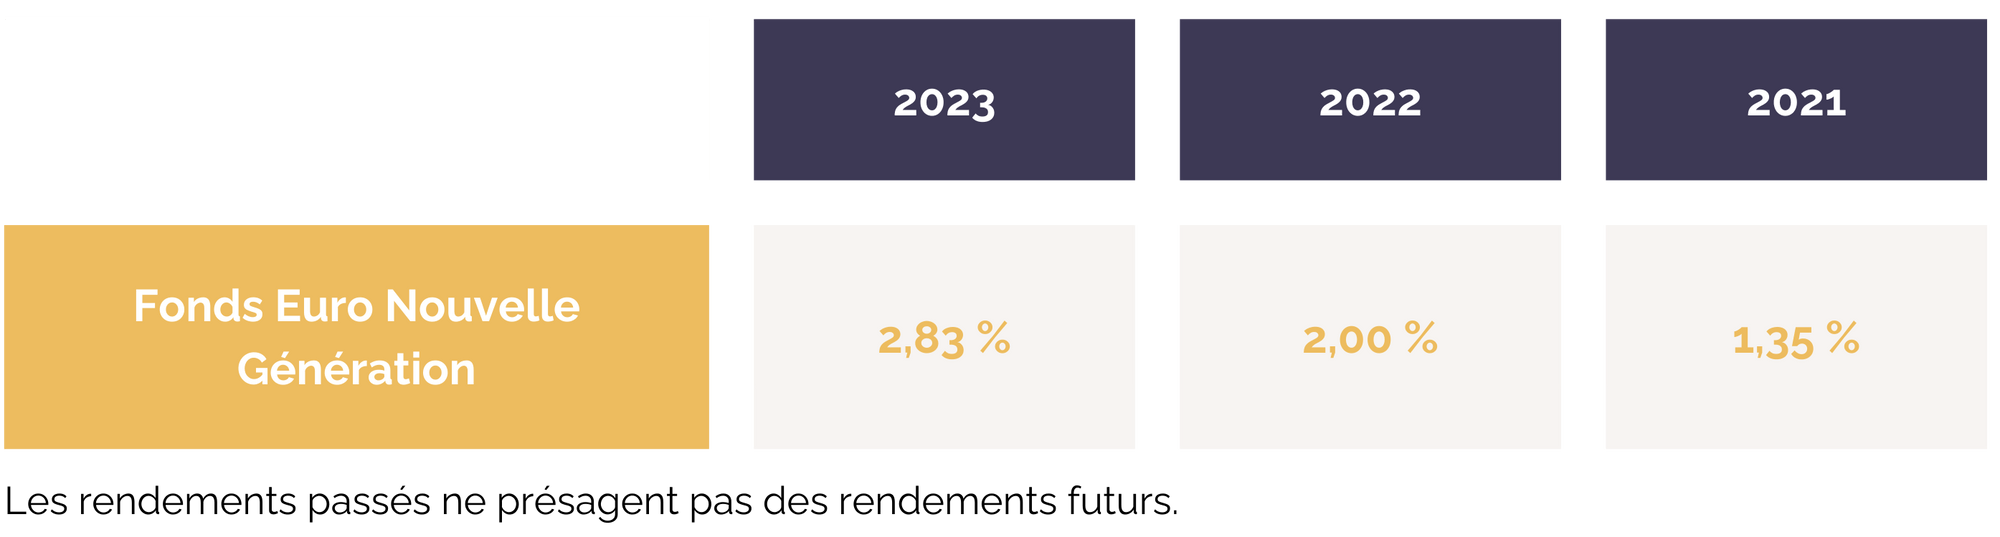 tableau-rendement-fonds-euros-nouvelle-generation.png